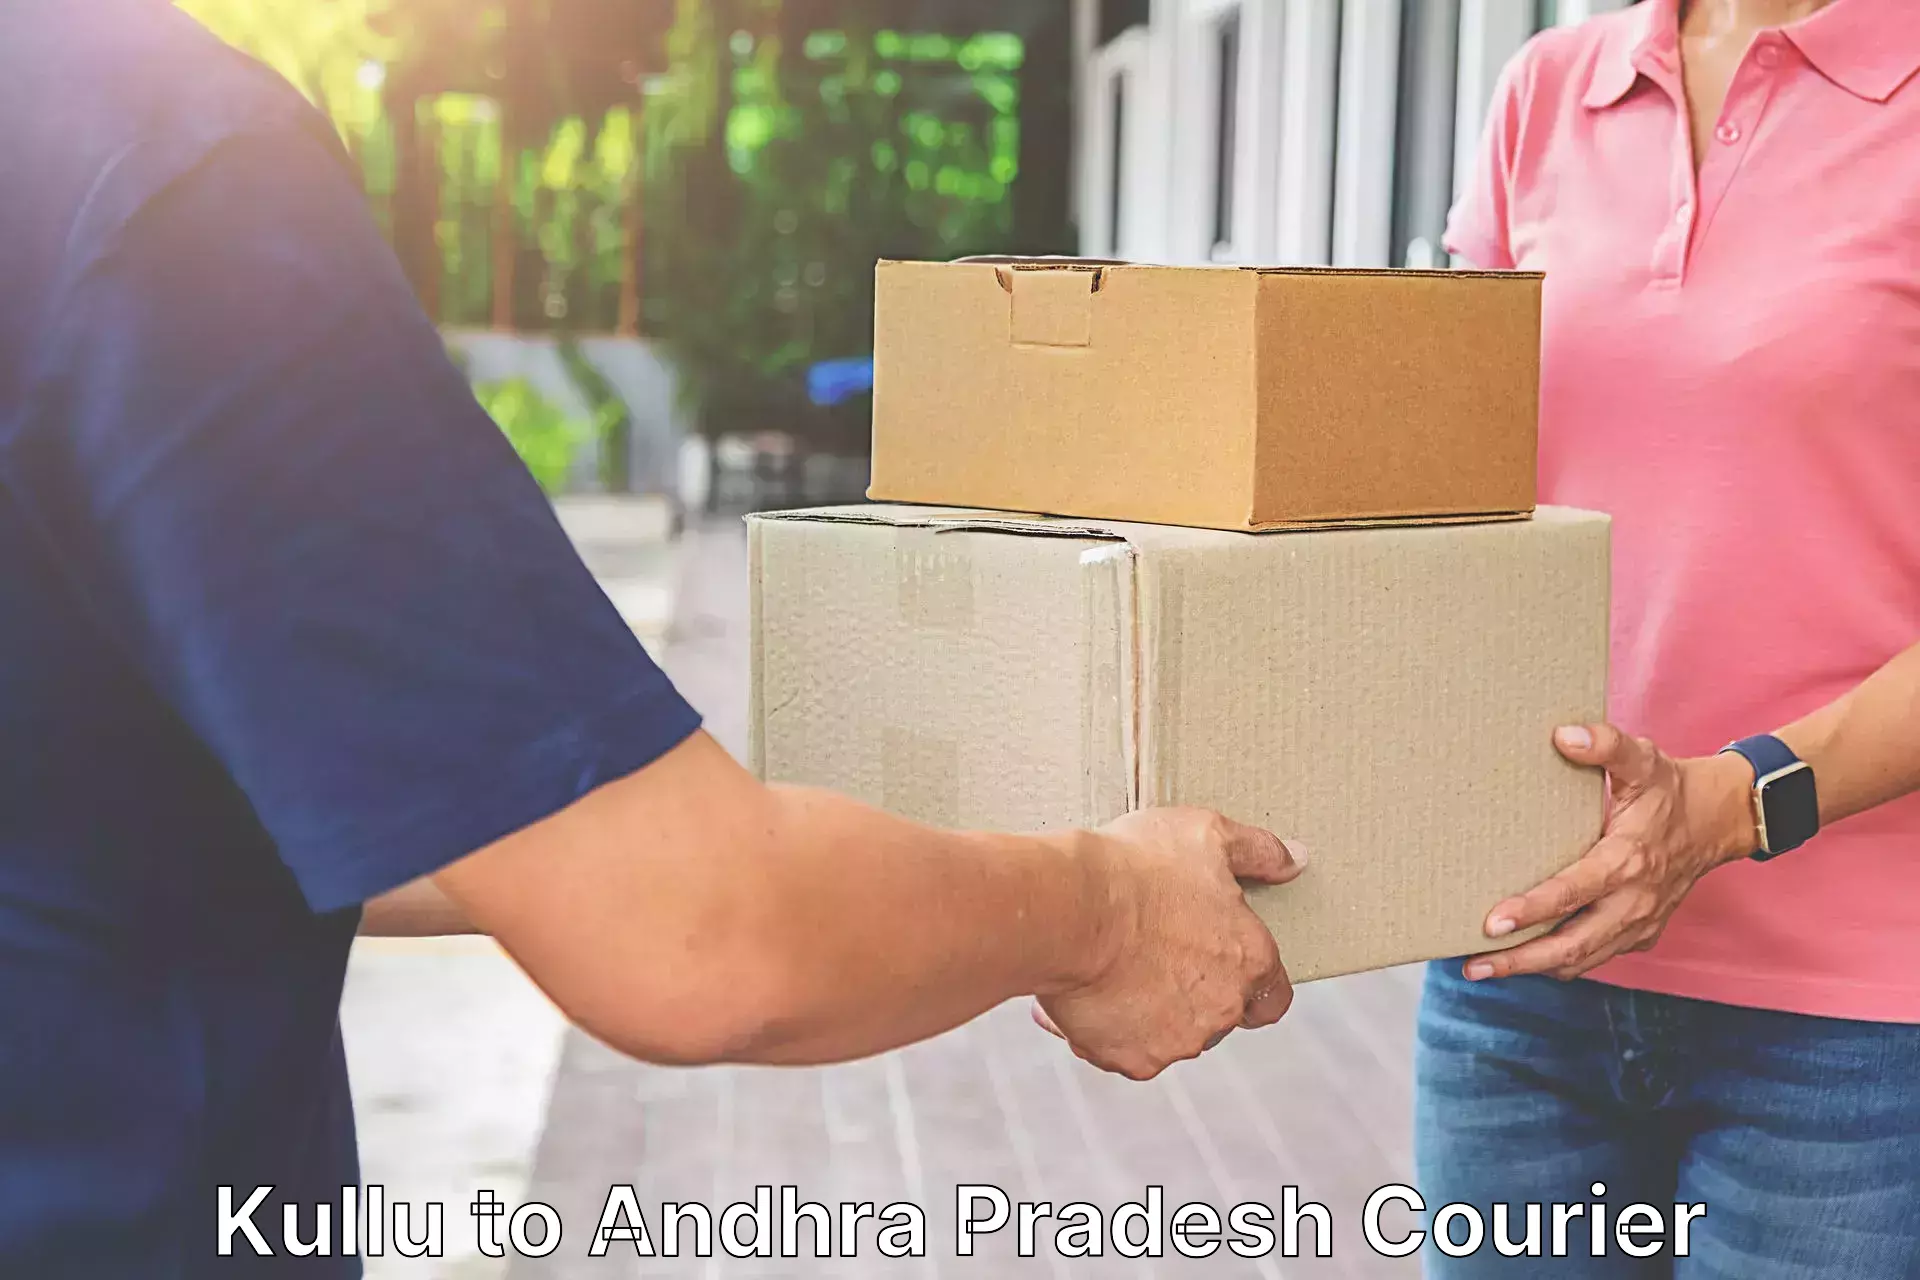 Efficient parcel delivery Kullu to Adoni